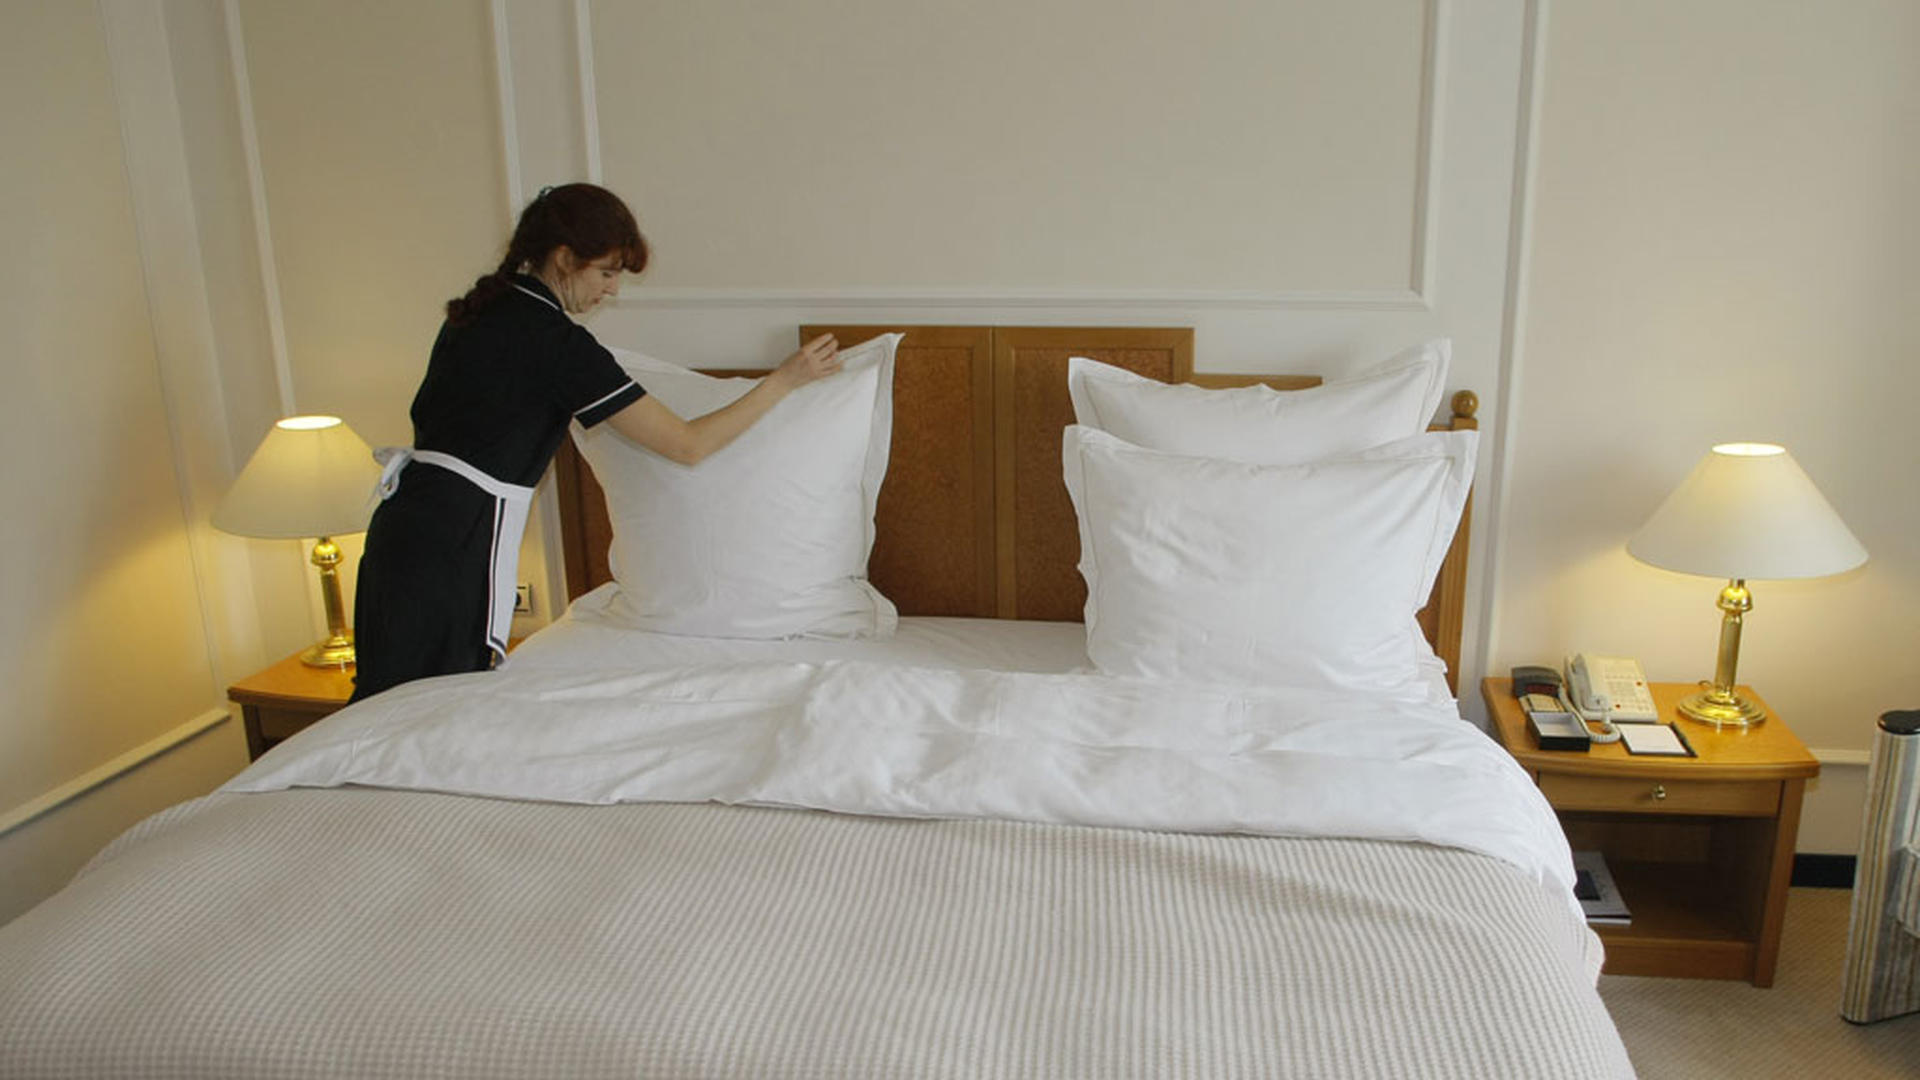 Уборка кровати в гостинице